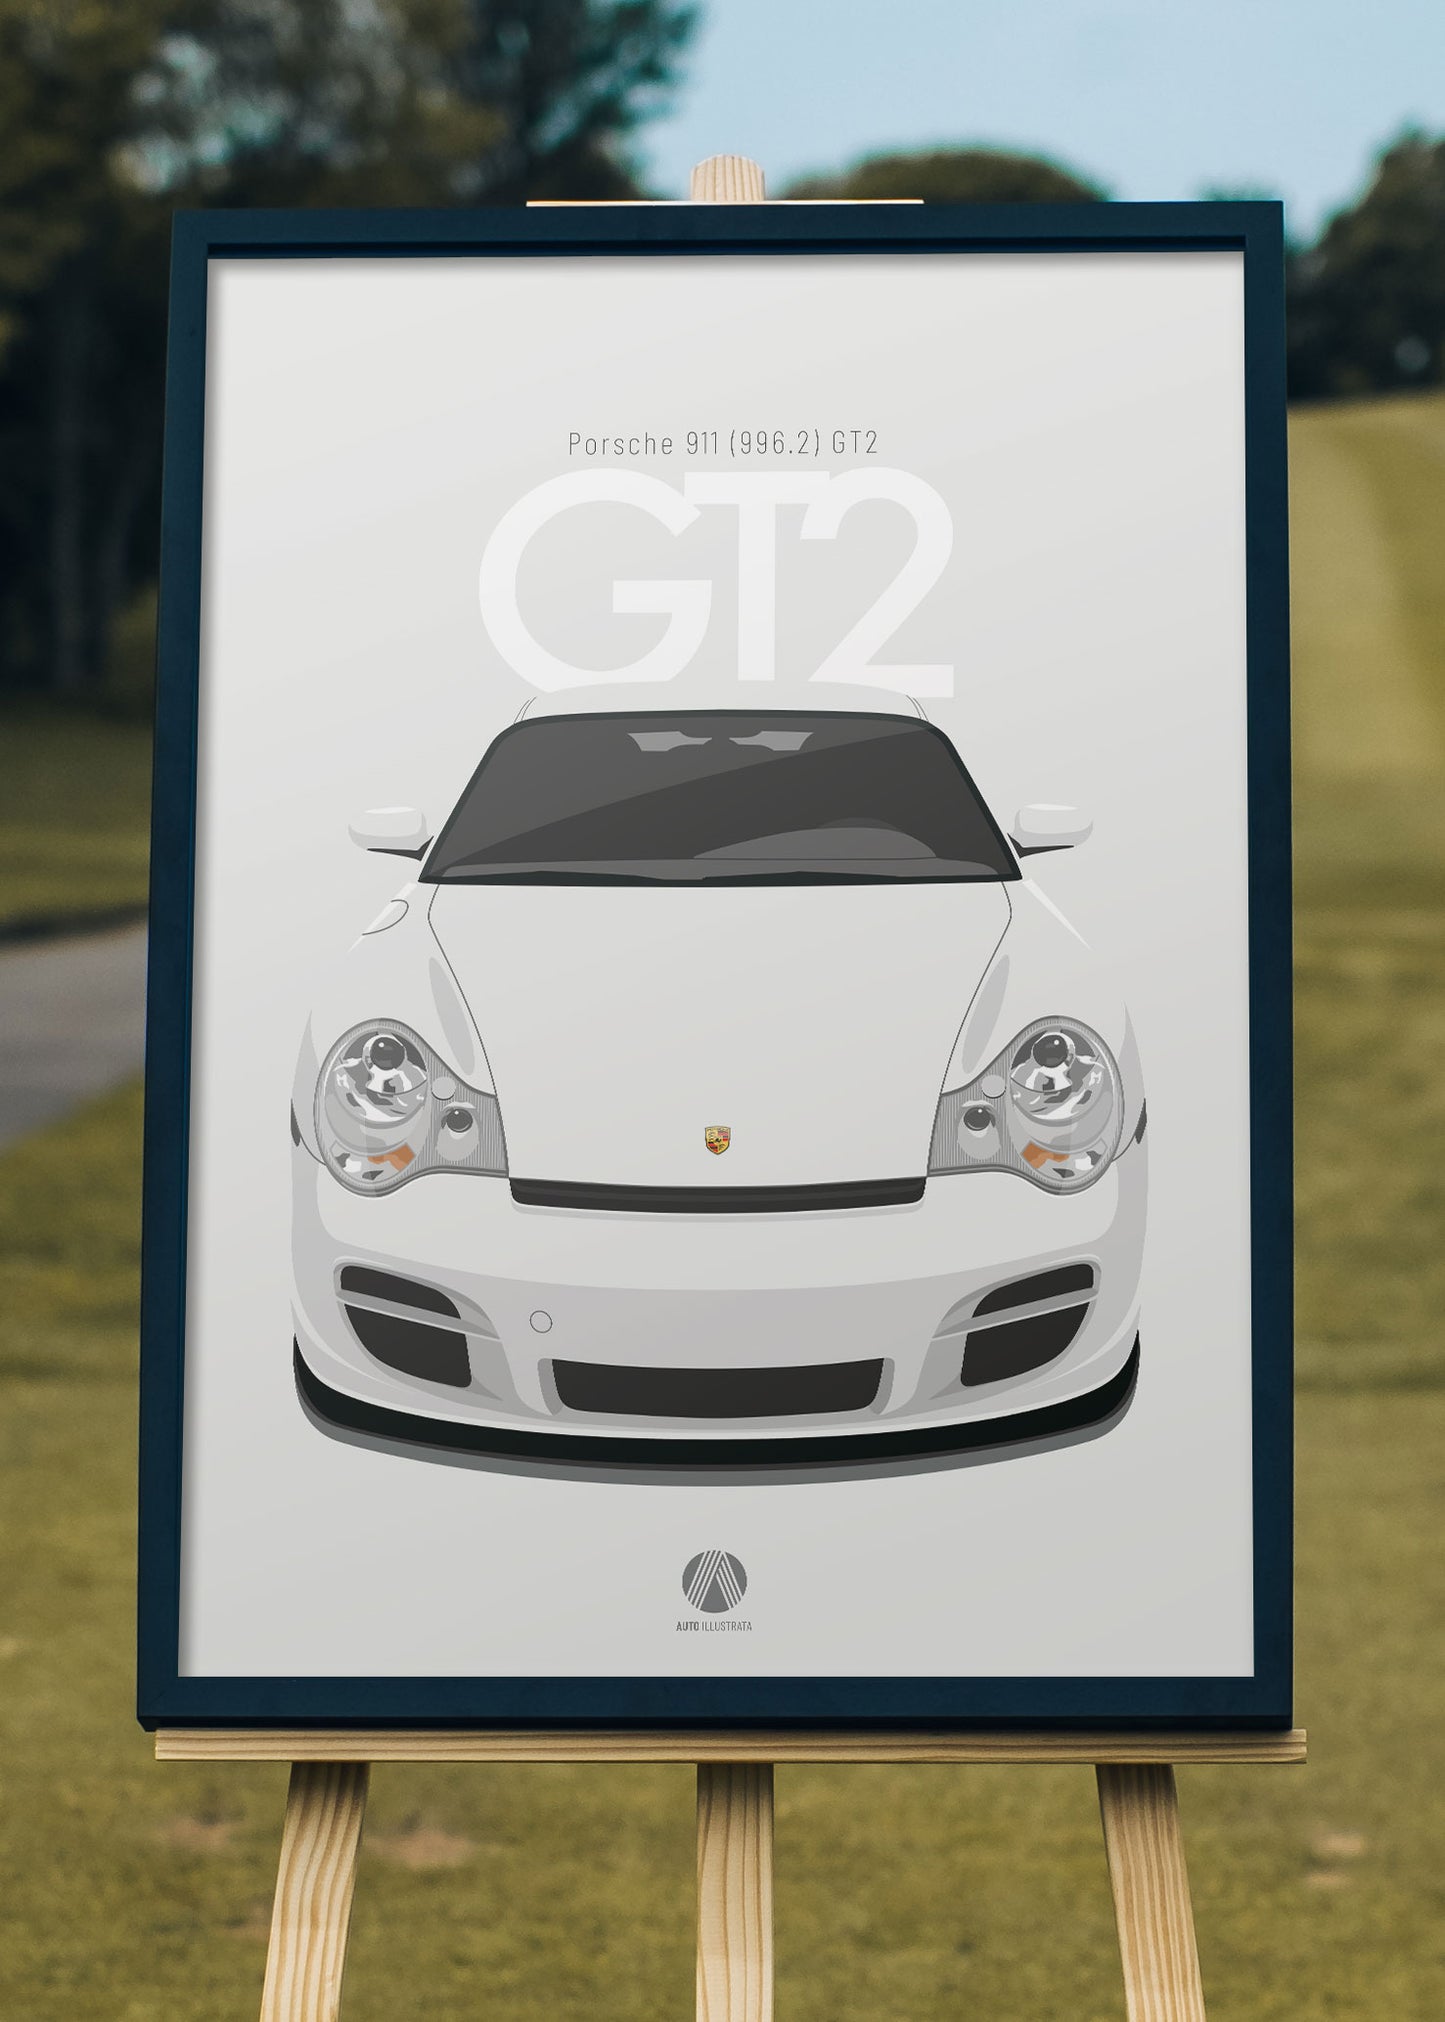 2001 Porsche 911 (996.2) GT2 Carrara White - poster print